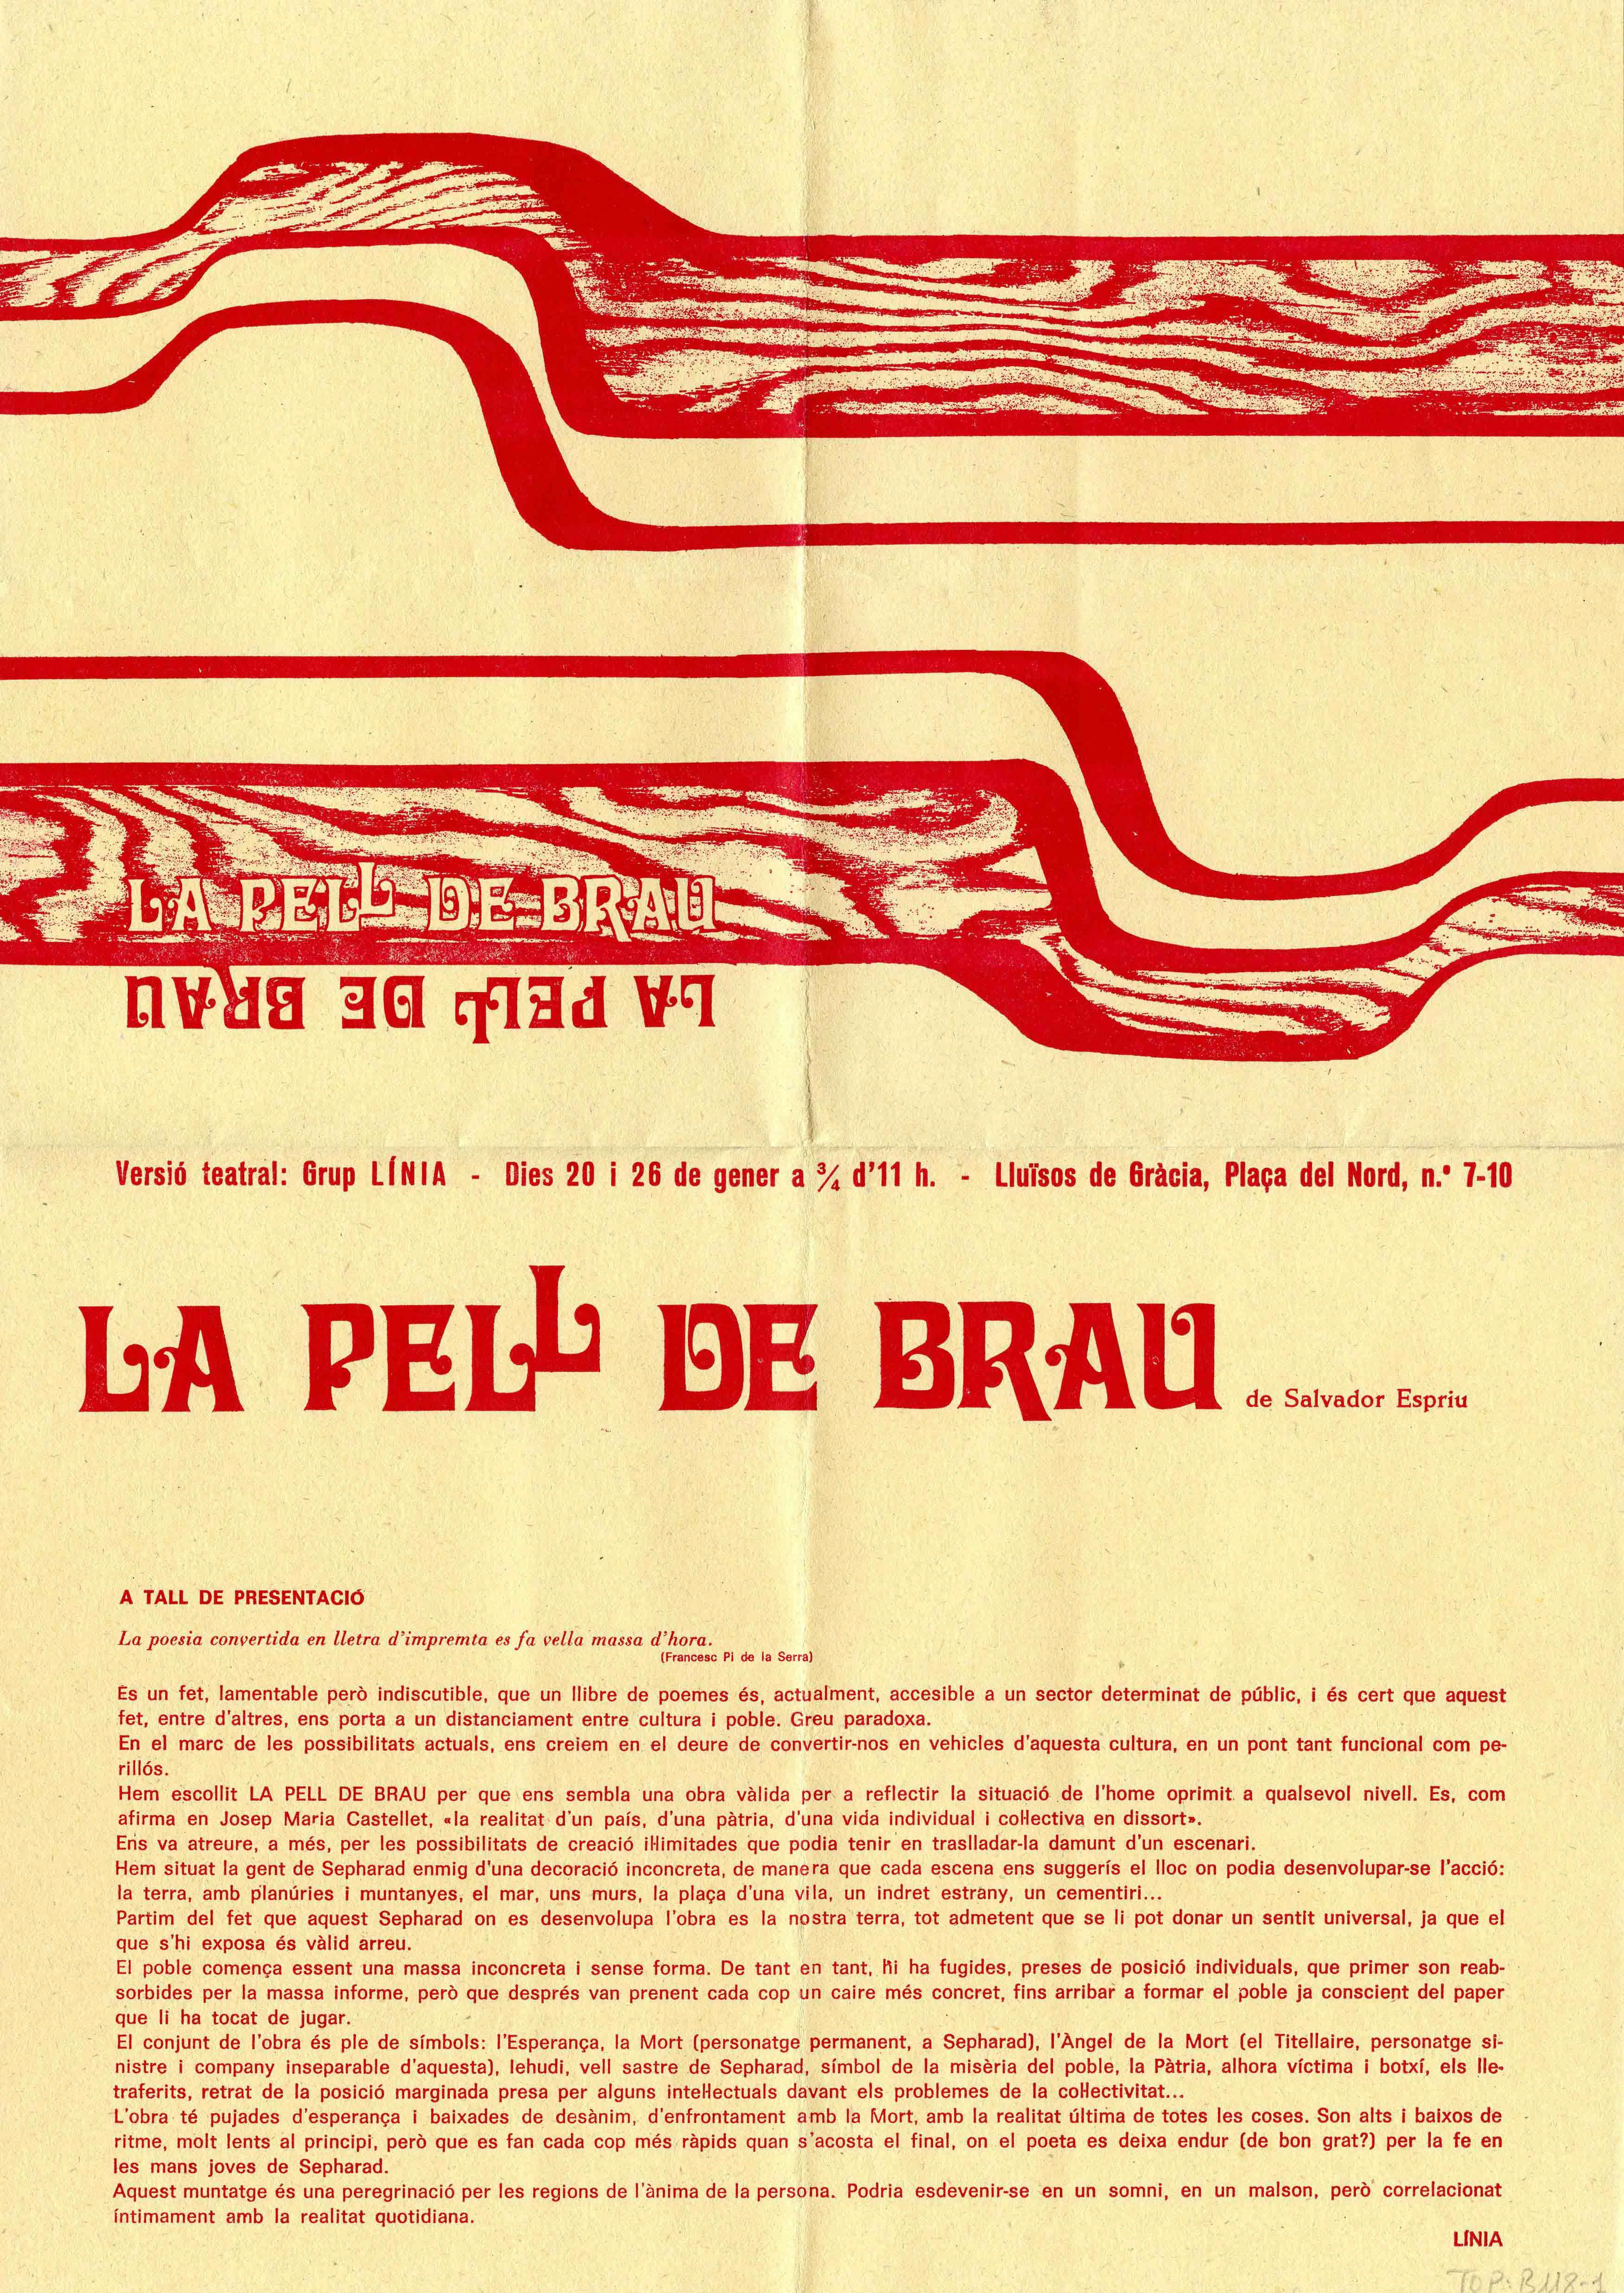 Programa. La pell de brau. Grup Línia. Lluïsos de Gràcia, 1973